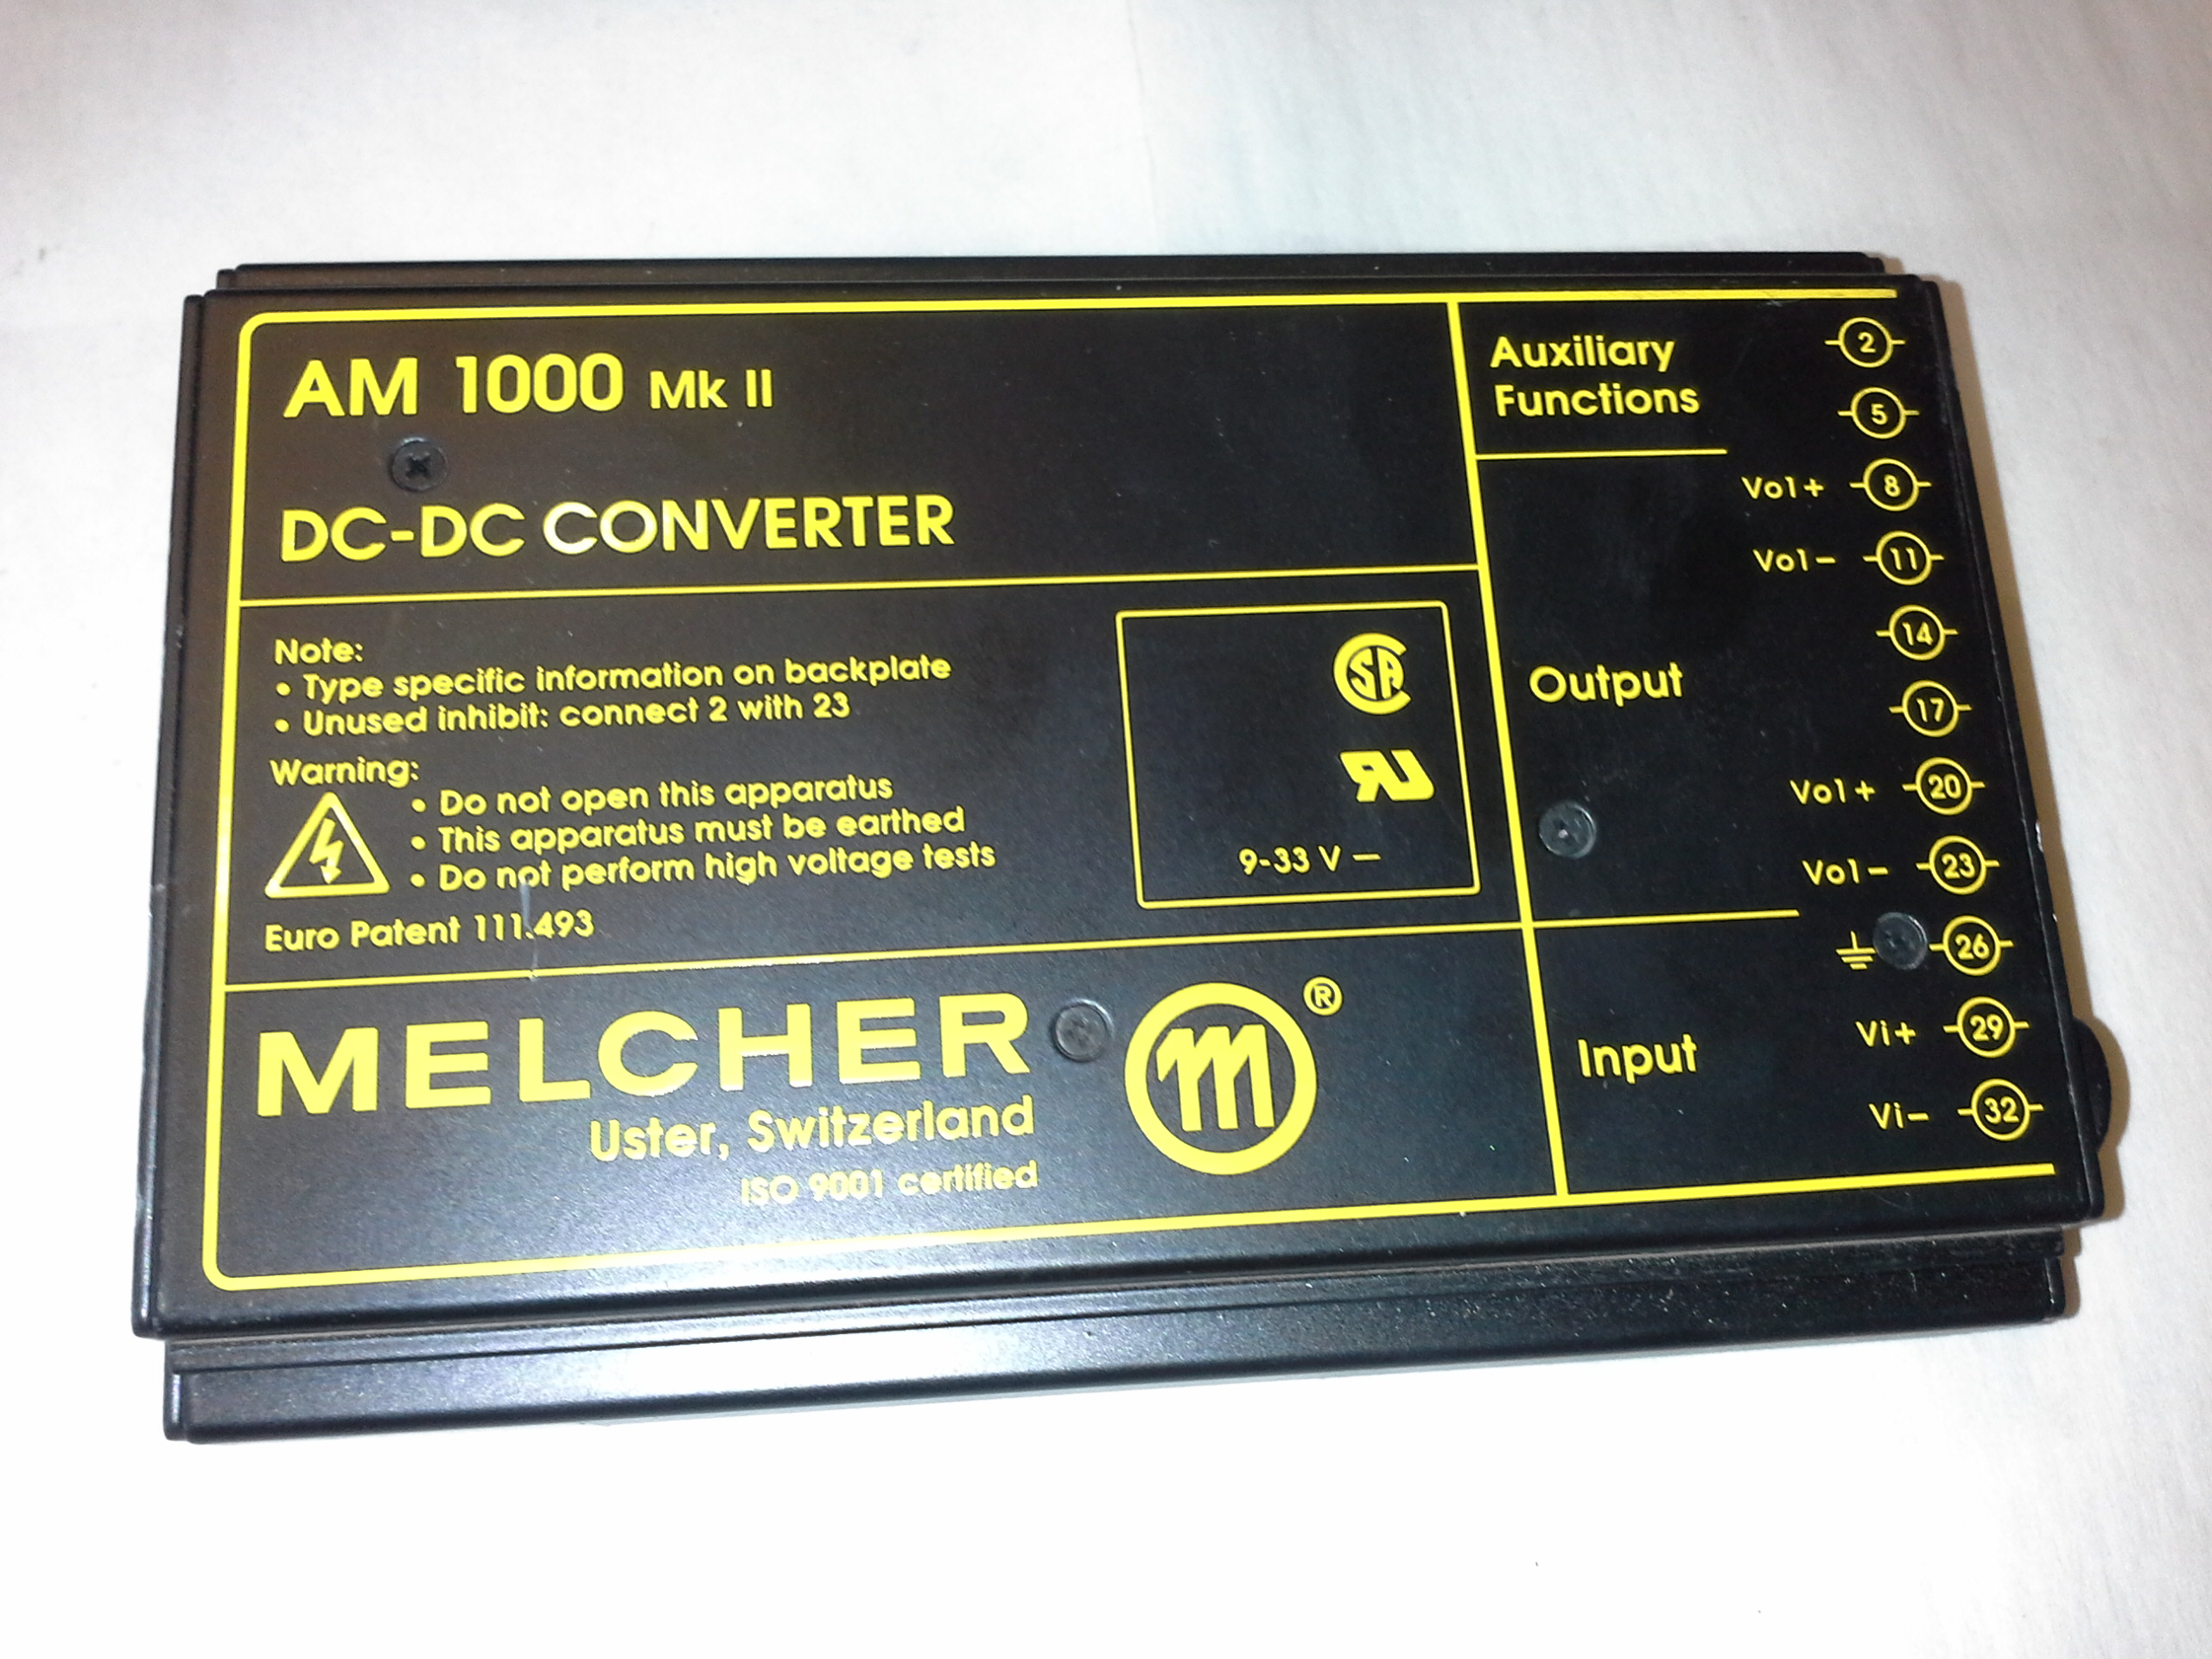 Melcher AM 1000 Mk II DC-DC Converter